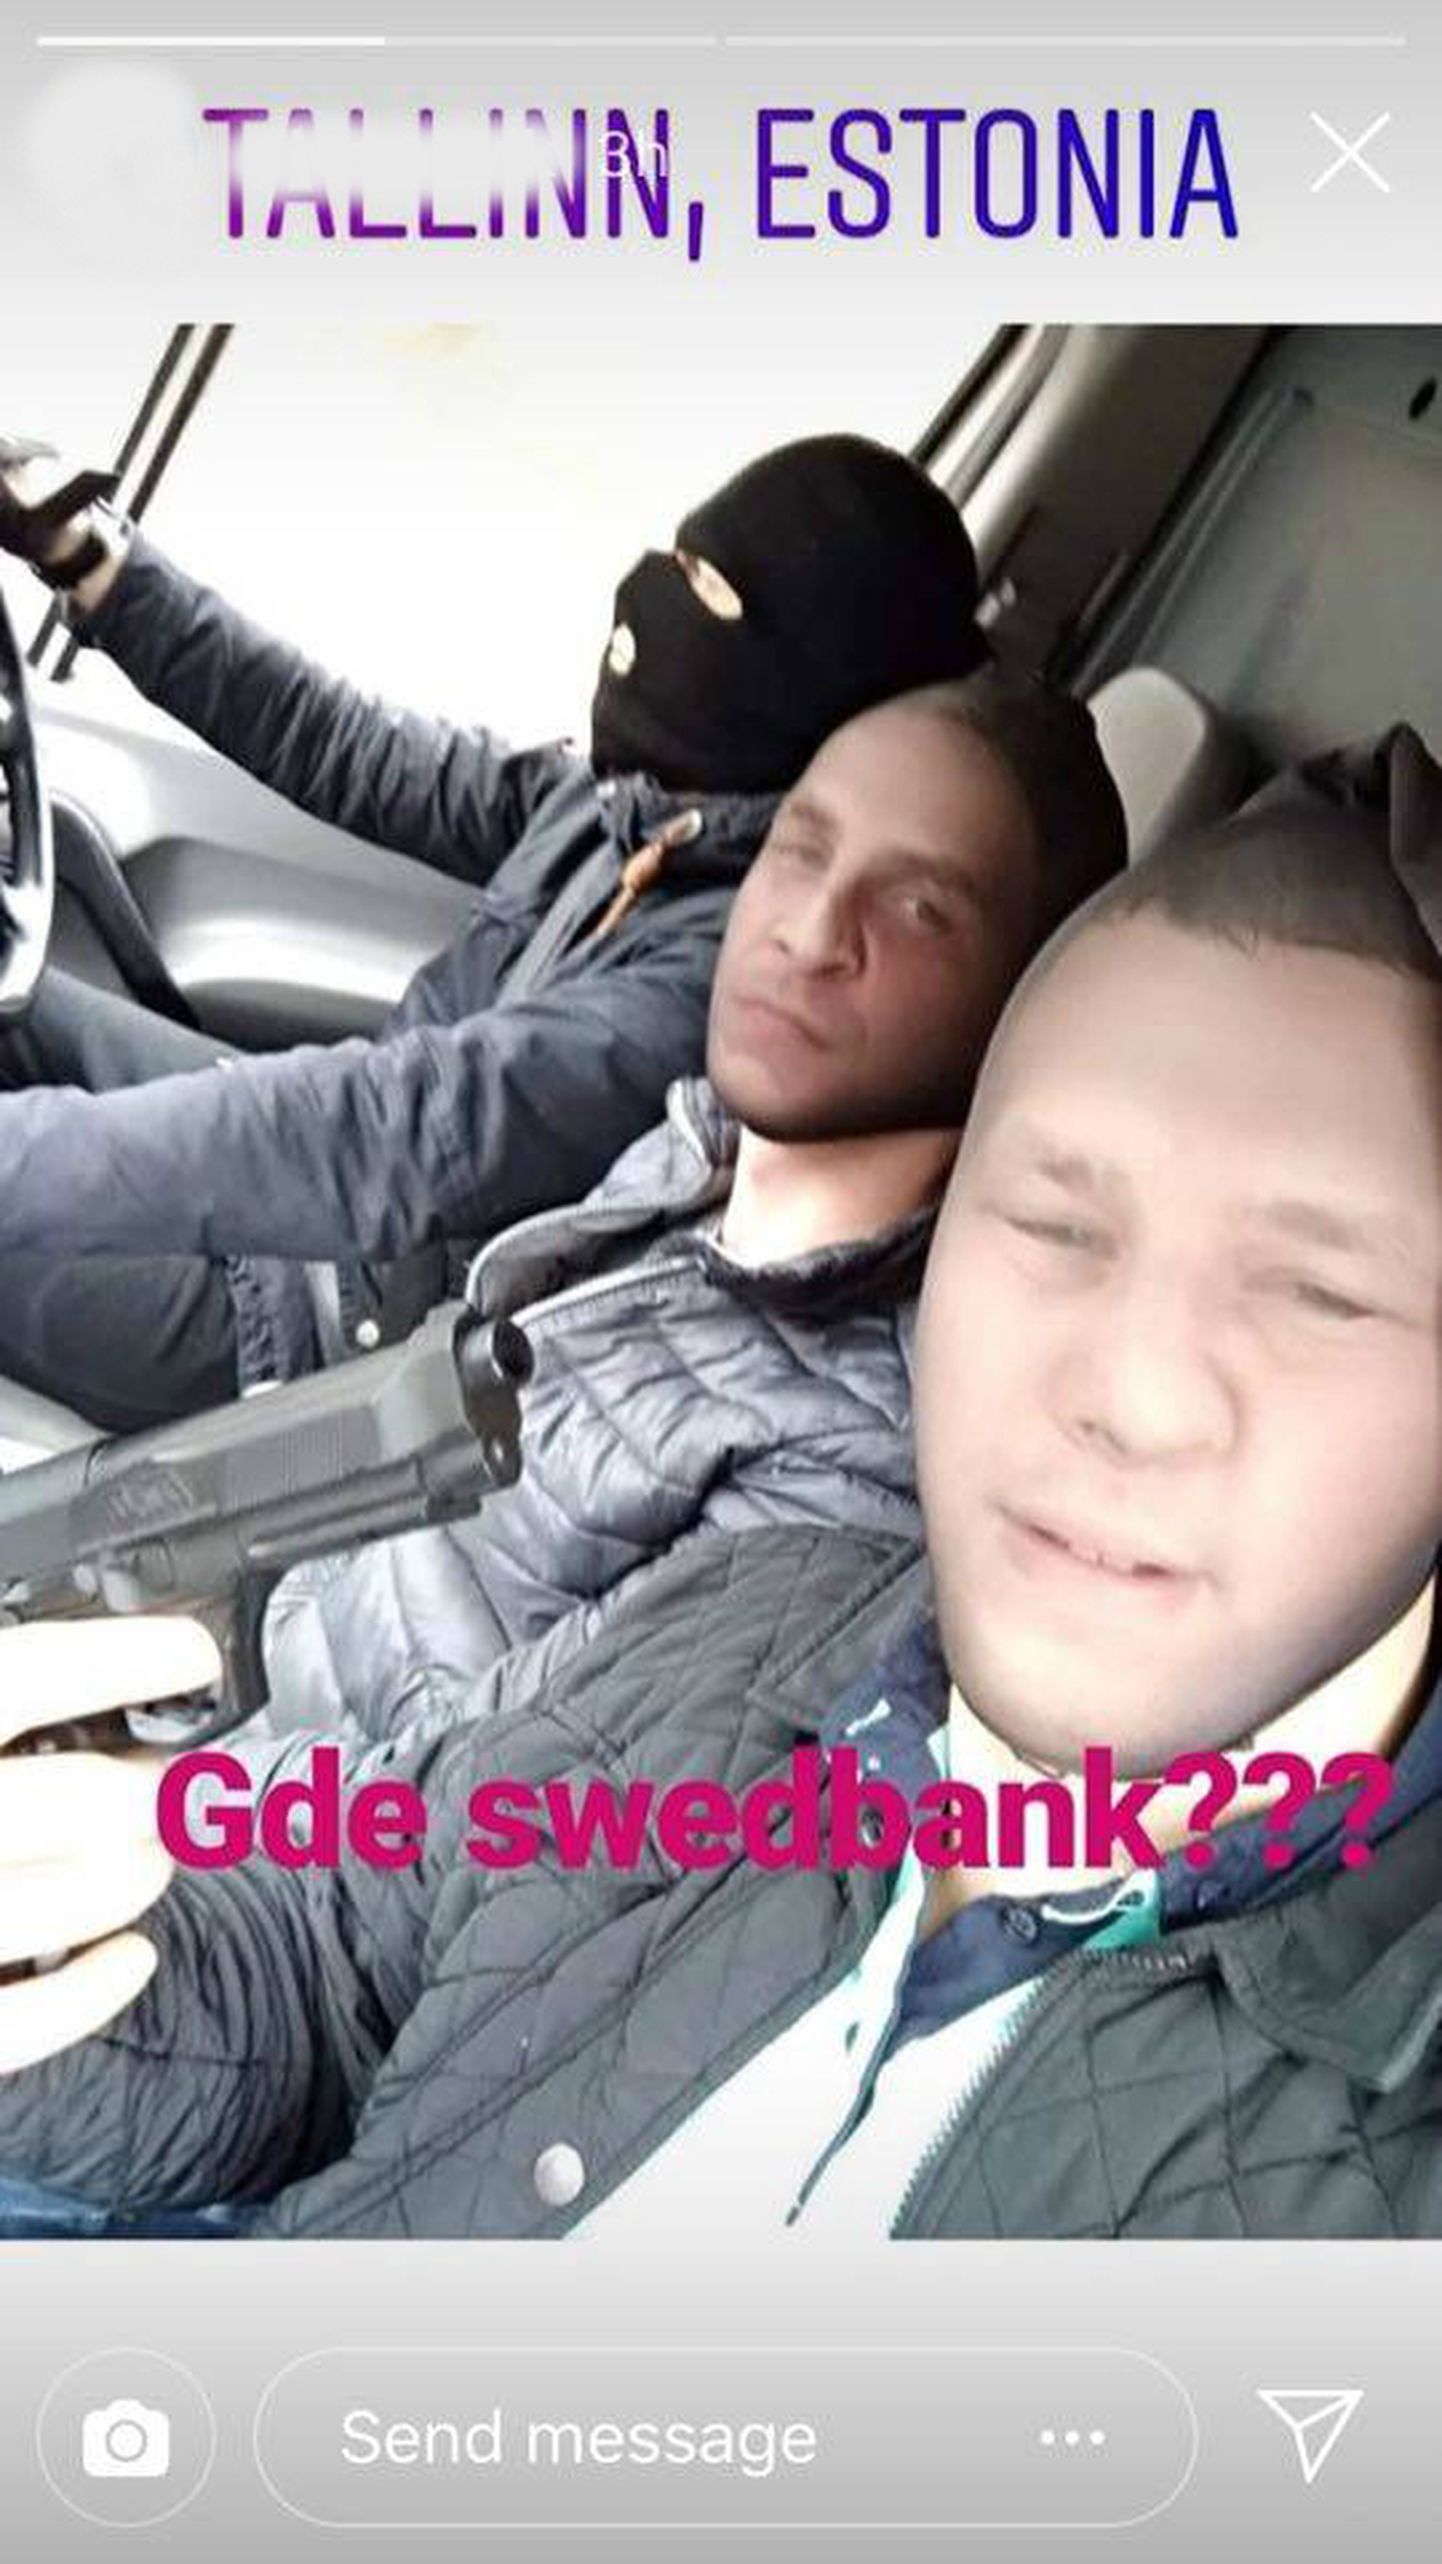 «Gde Swedbank?» - три молодых человека в воскресенье в Таллинне решили попугать людей.